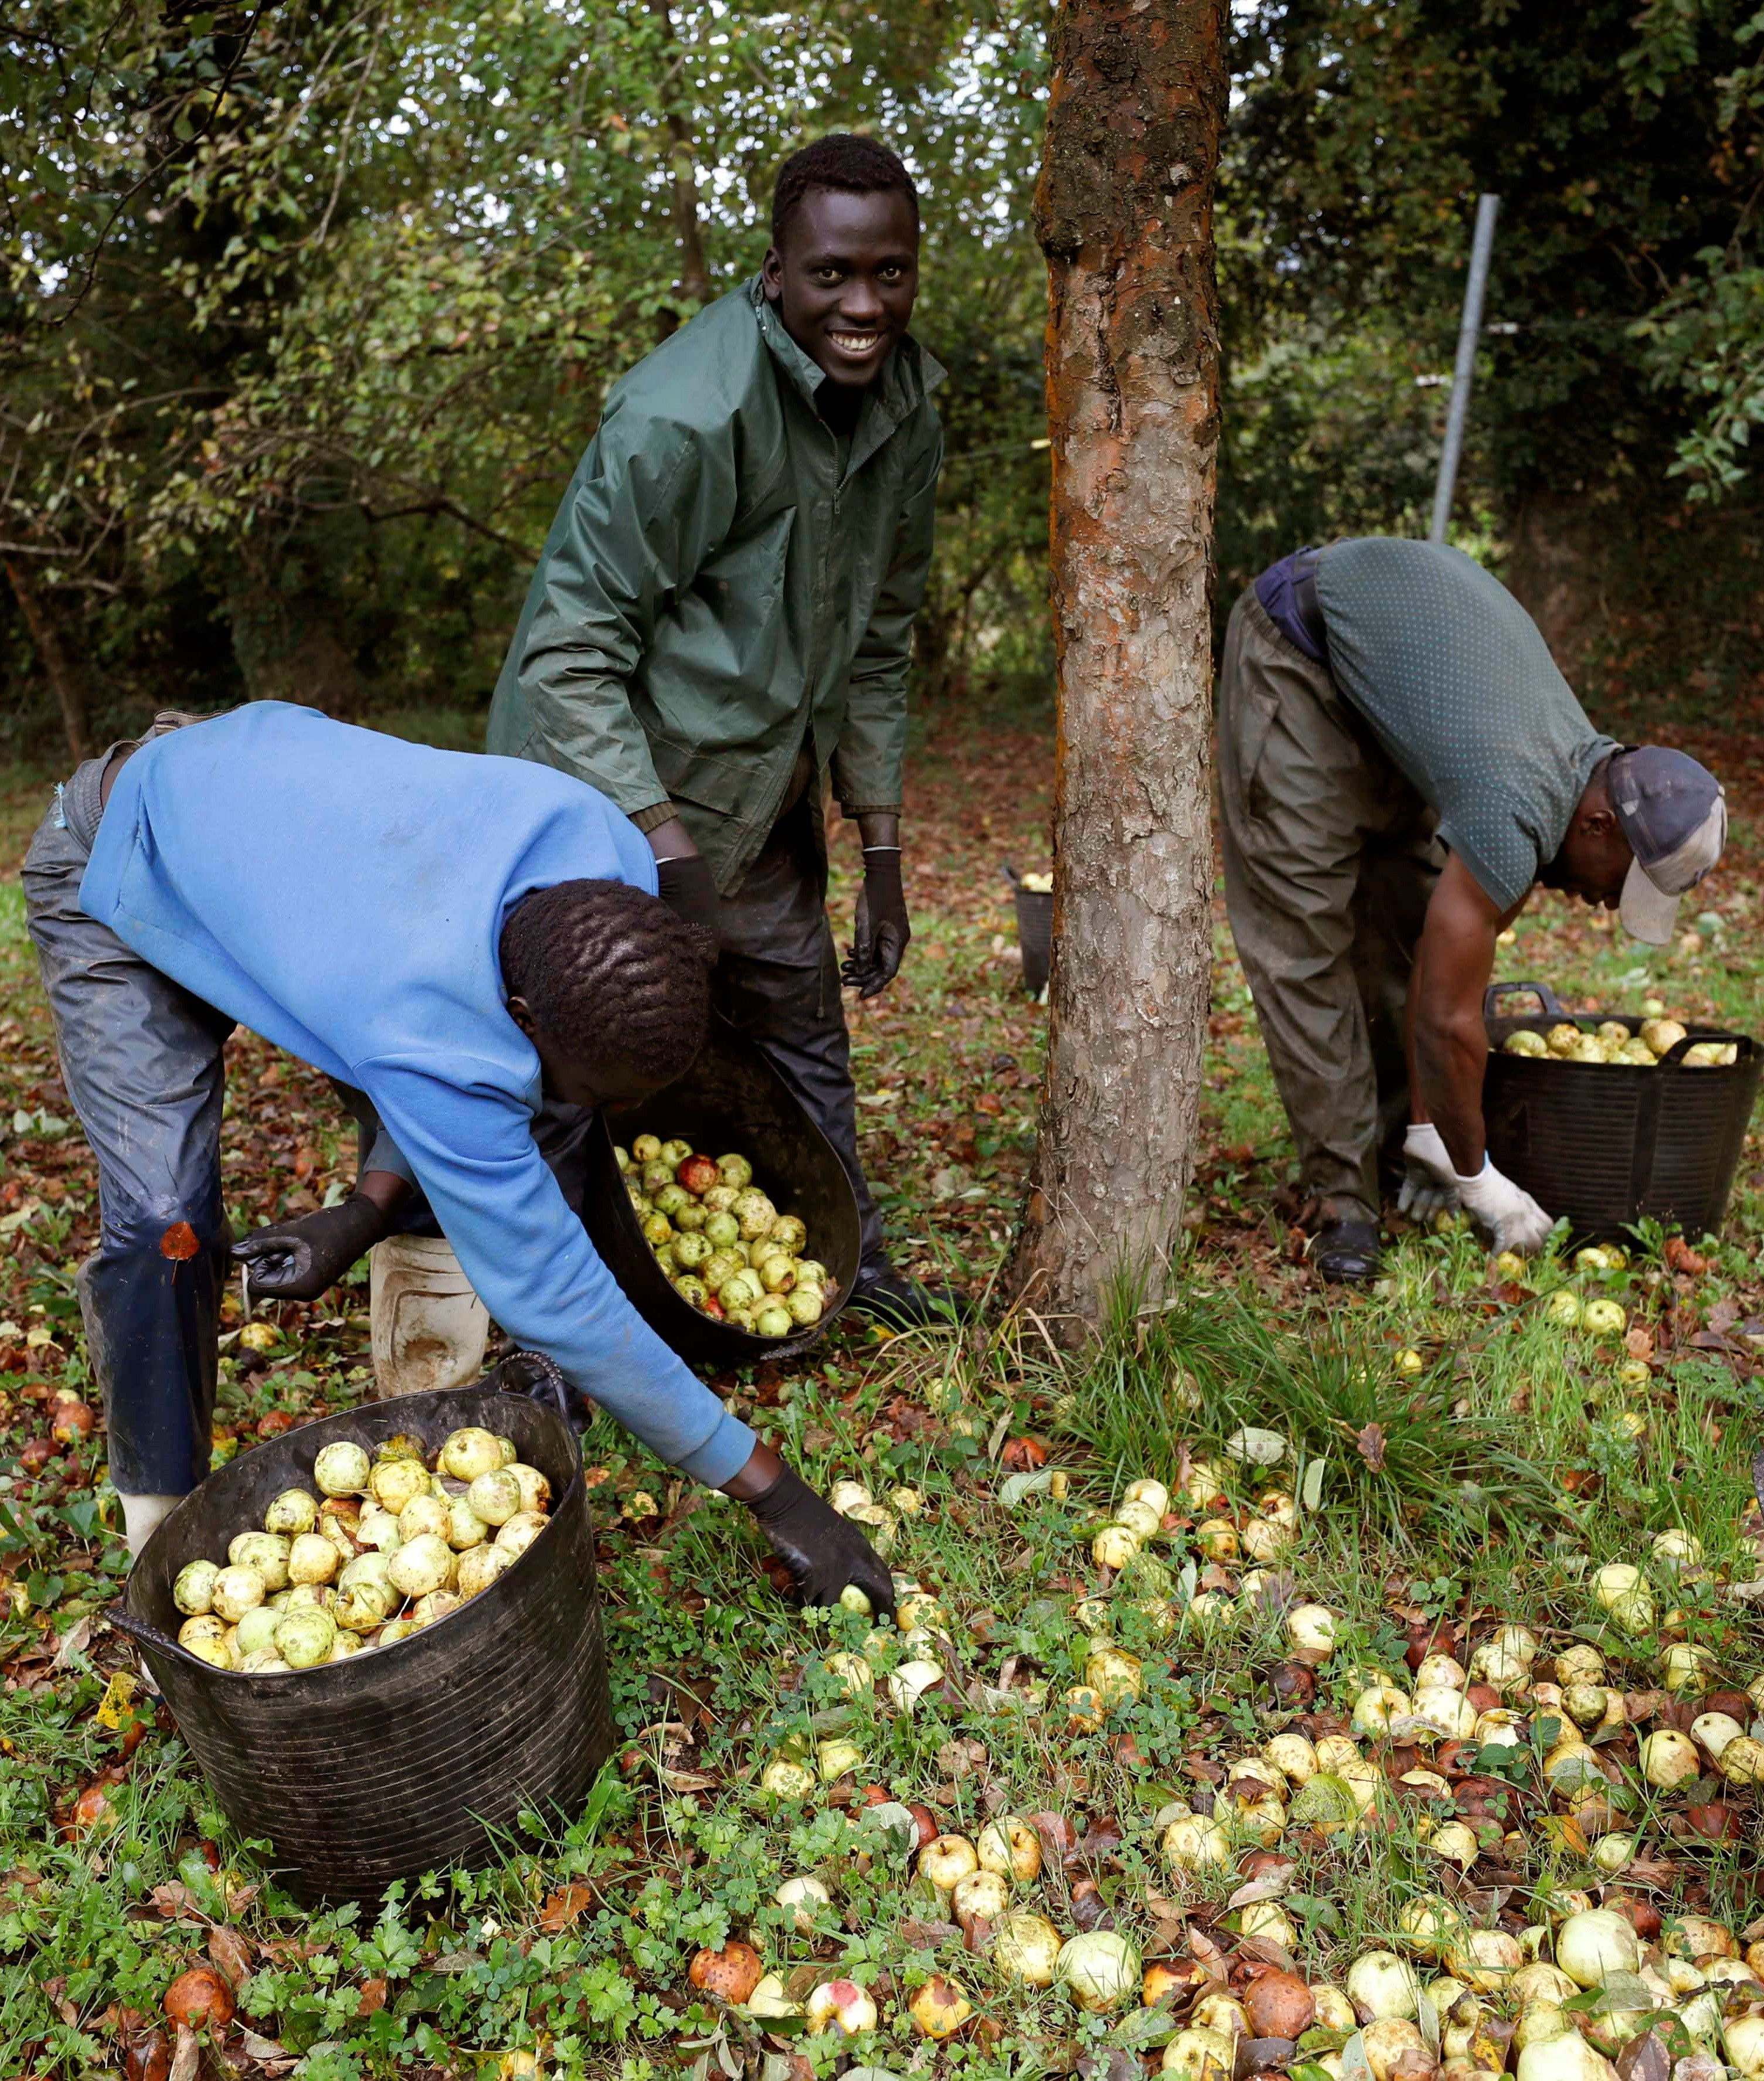 Trabajadores senegaleses trabajan en Asturias en la campaña de recogida de la manzana utilizada para elaborar sidra. La Denominación de Origen Protegida (DOP) «Sidra Asturias» batió el pasado año un nuevo récord histórico al aumentar sus ventas en un 73 por ciento con 3,7 millones de contraetiquetas entregadas